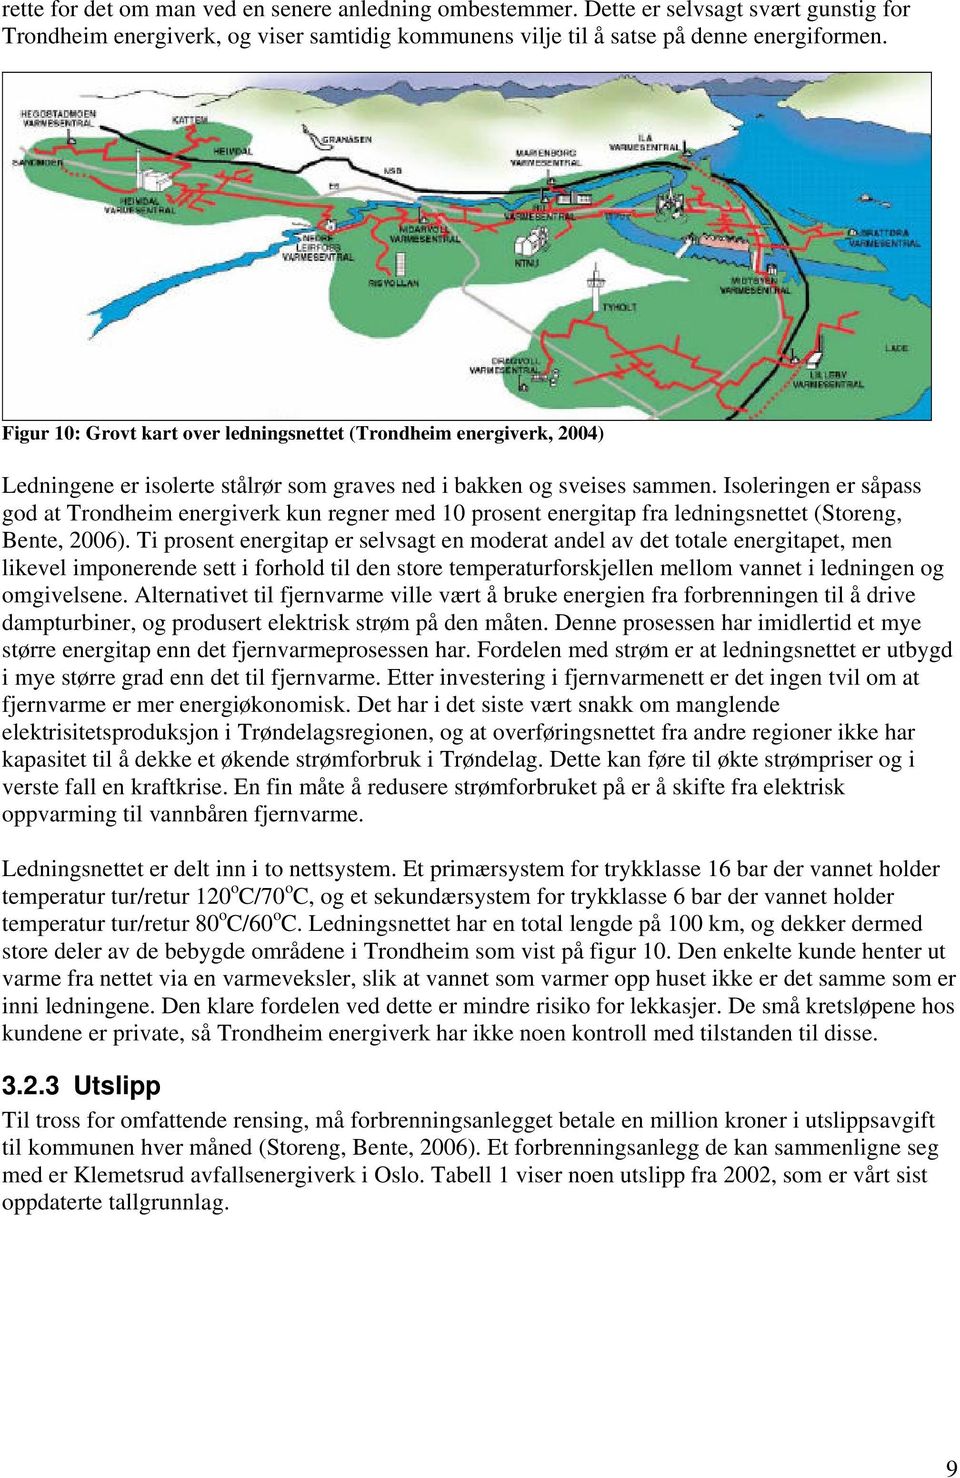 Isoleringen er såpass god at Trondheim energiverk kun regner med 10 prosent energitap fra ledningsnettet (Storeng, Bente, 2006).